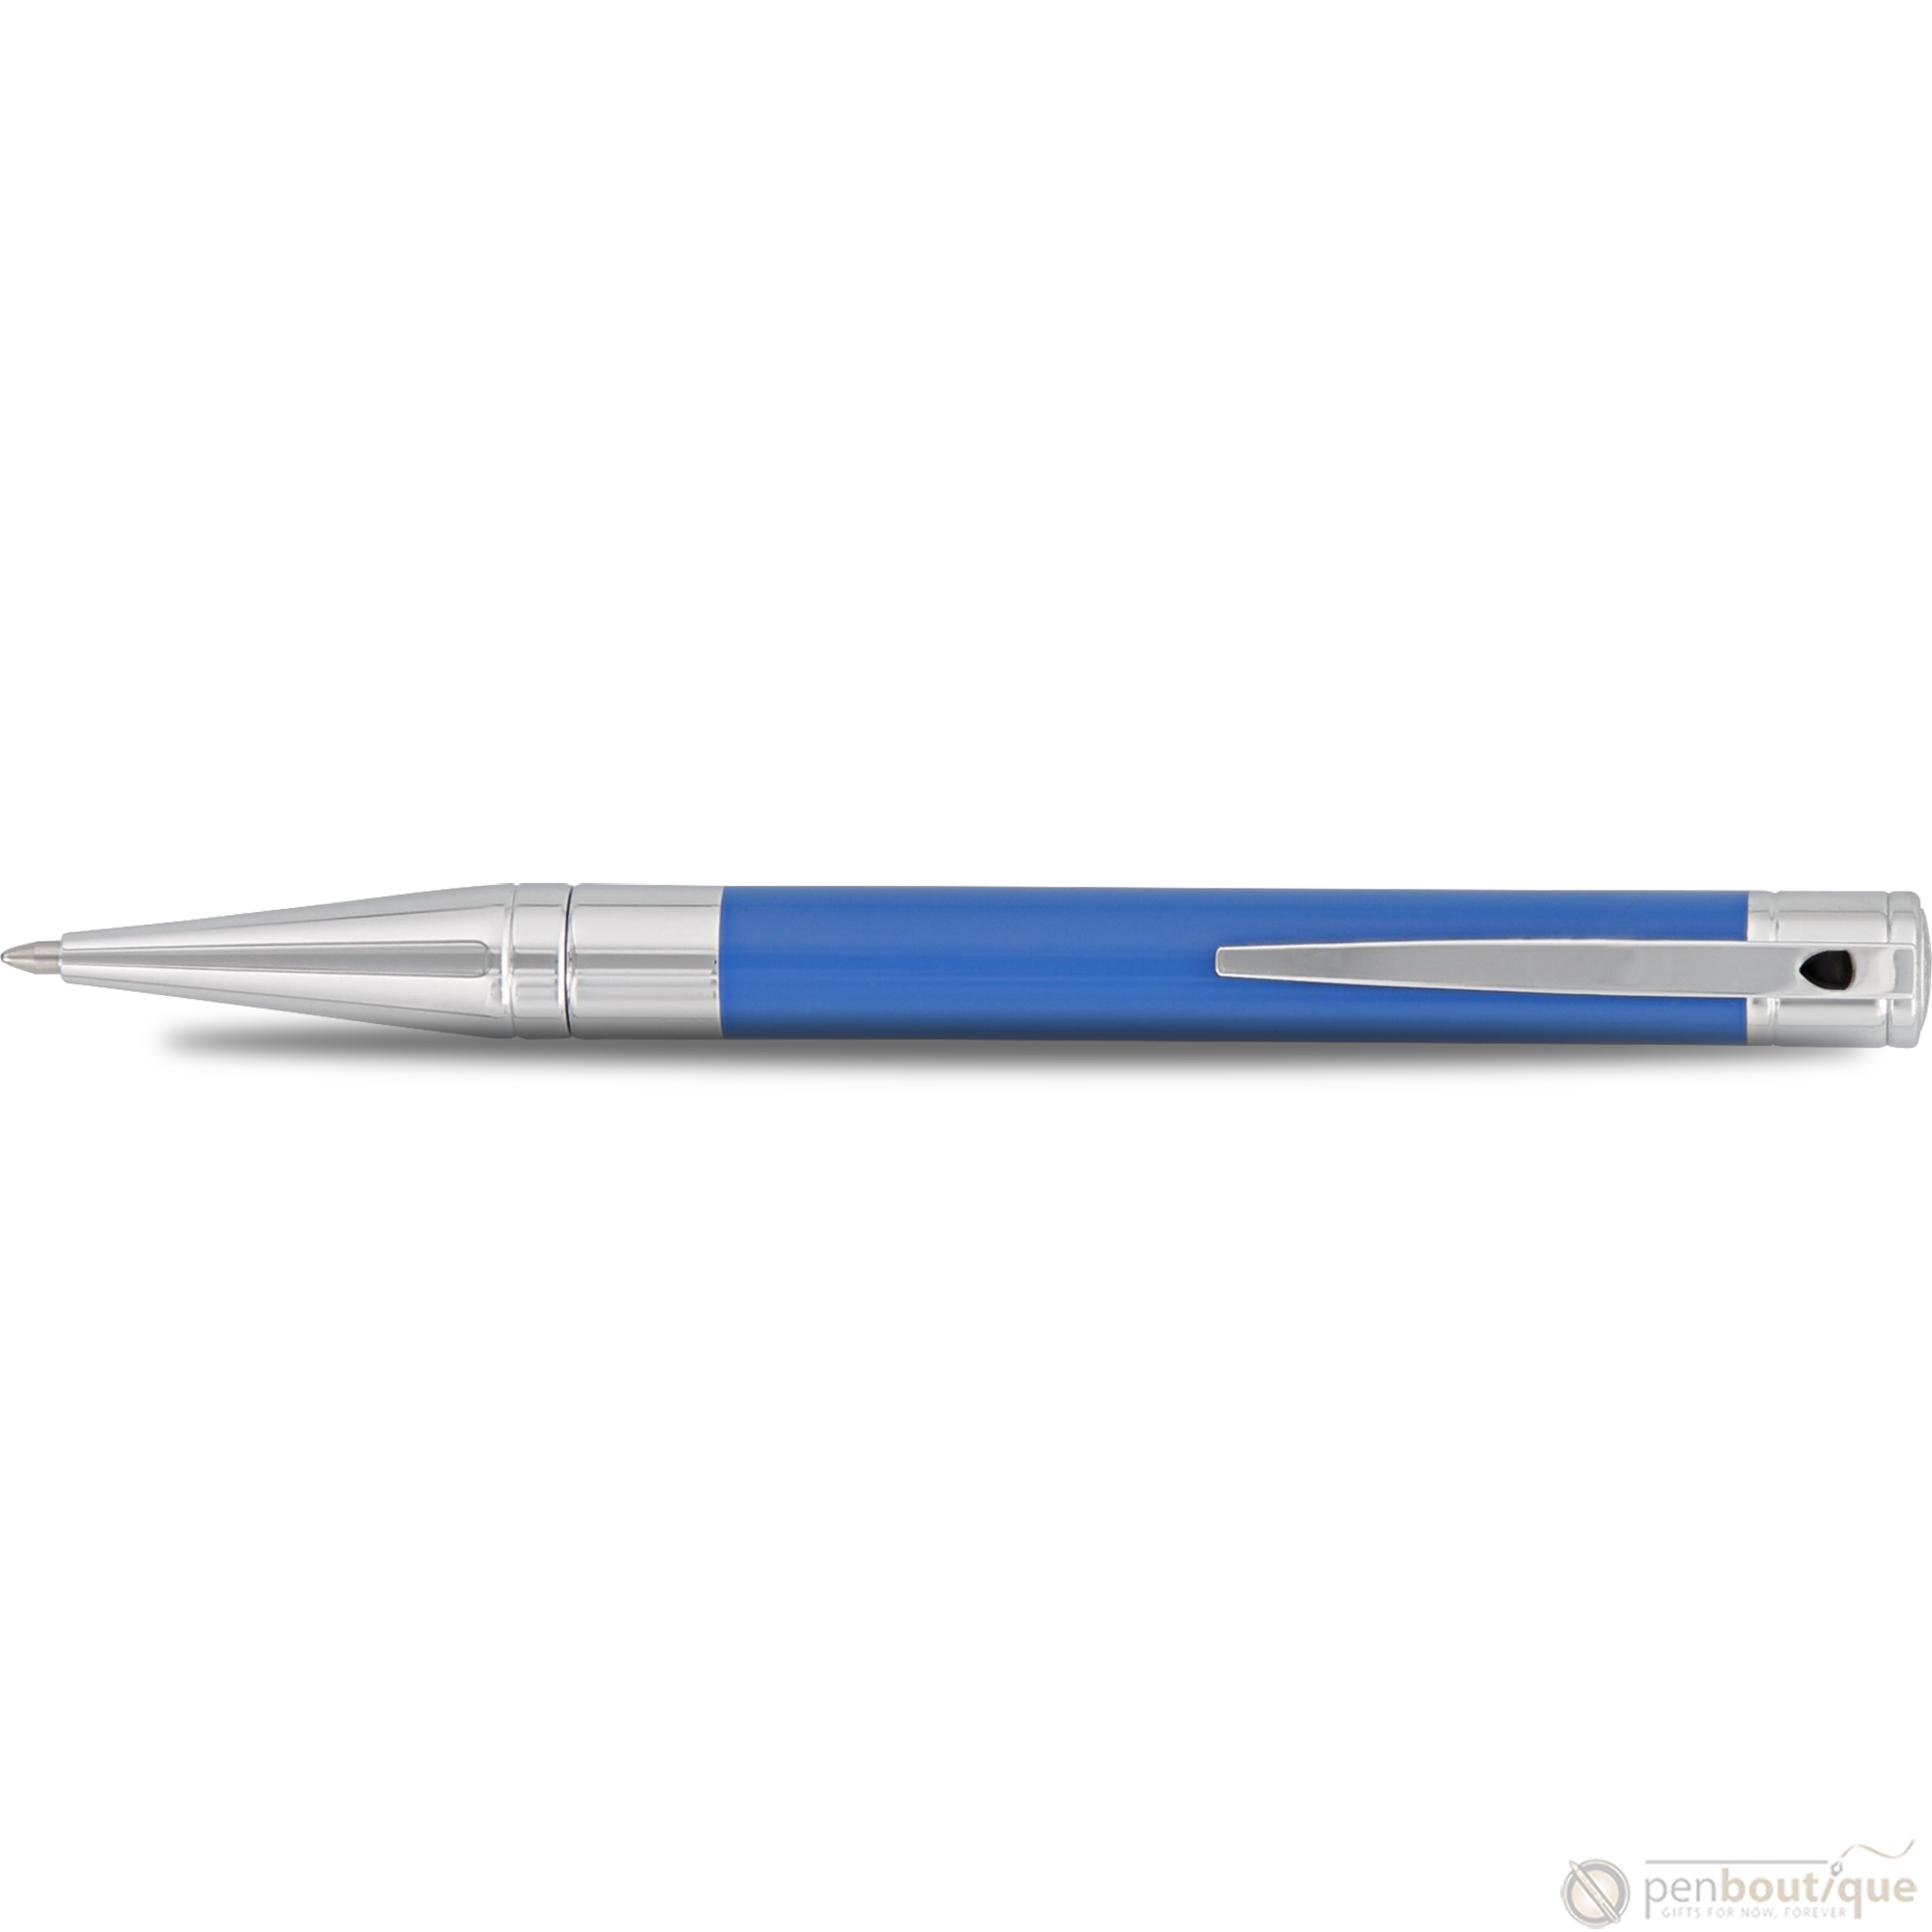 S T Dupont D-Initial Ballpoint Pen - Electric Blue-Pen Boutique Ltd